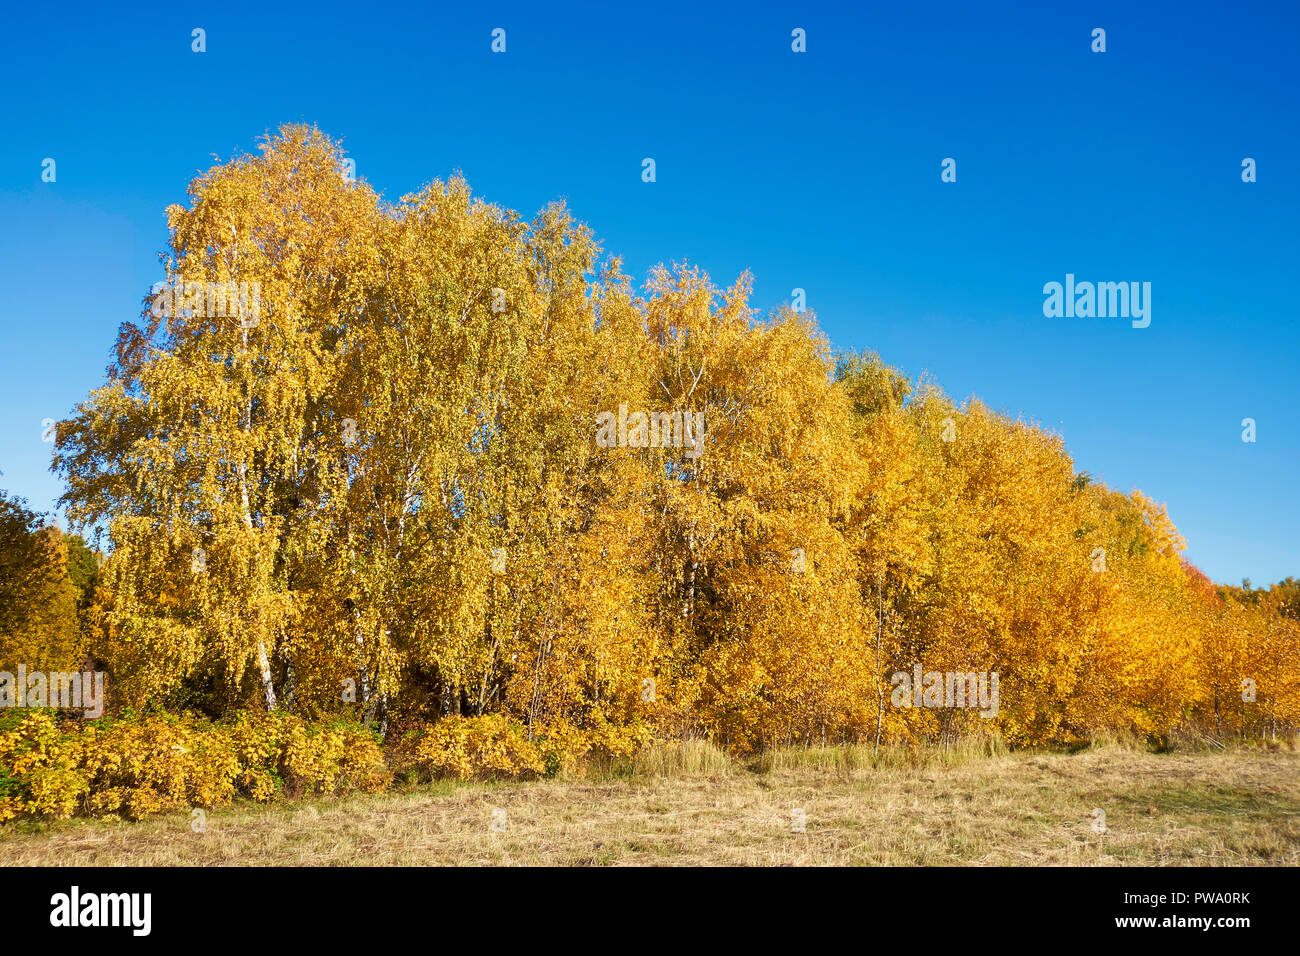 Los árboles con follaje amarillo dorado en otoño. Bitsa Bitsevski Park (Parque), Moscú, Rusia. Foto de stock